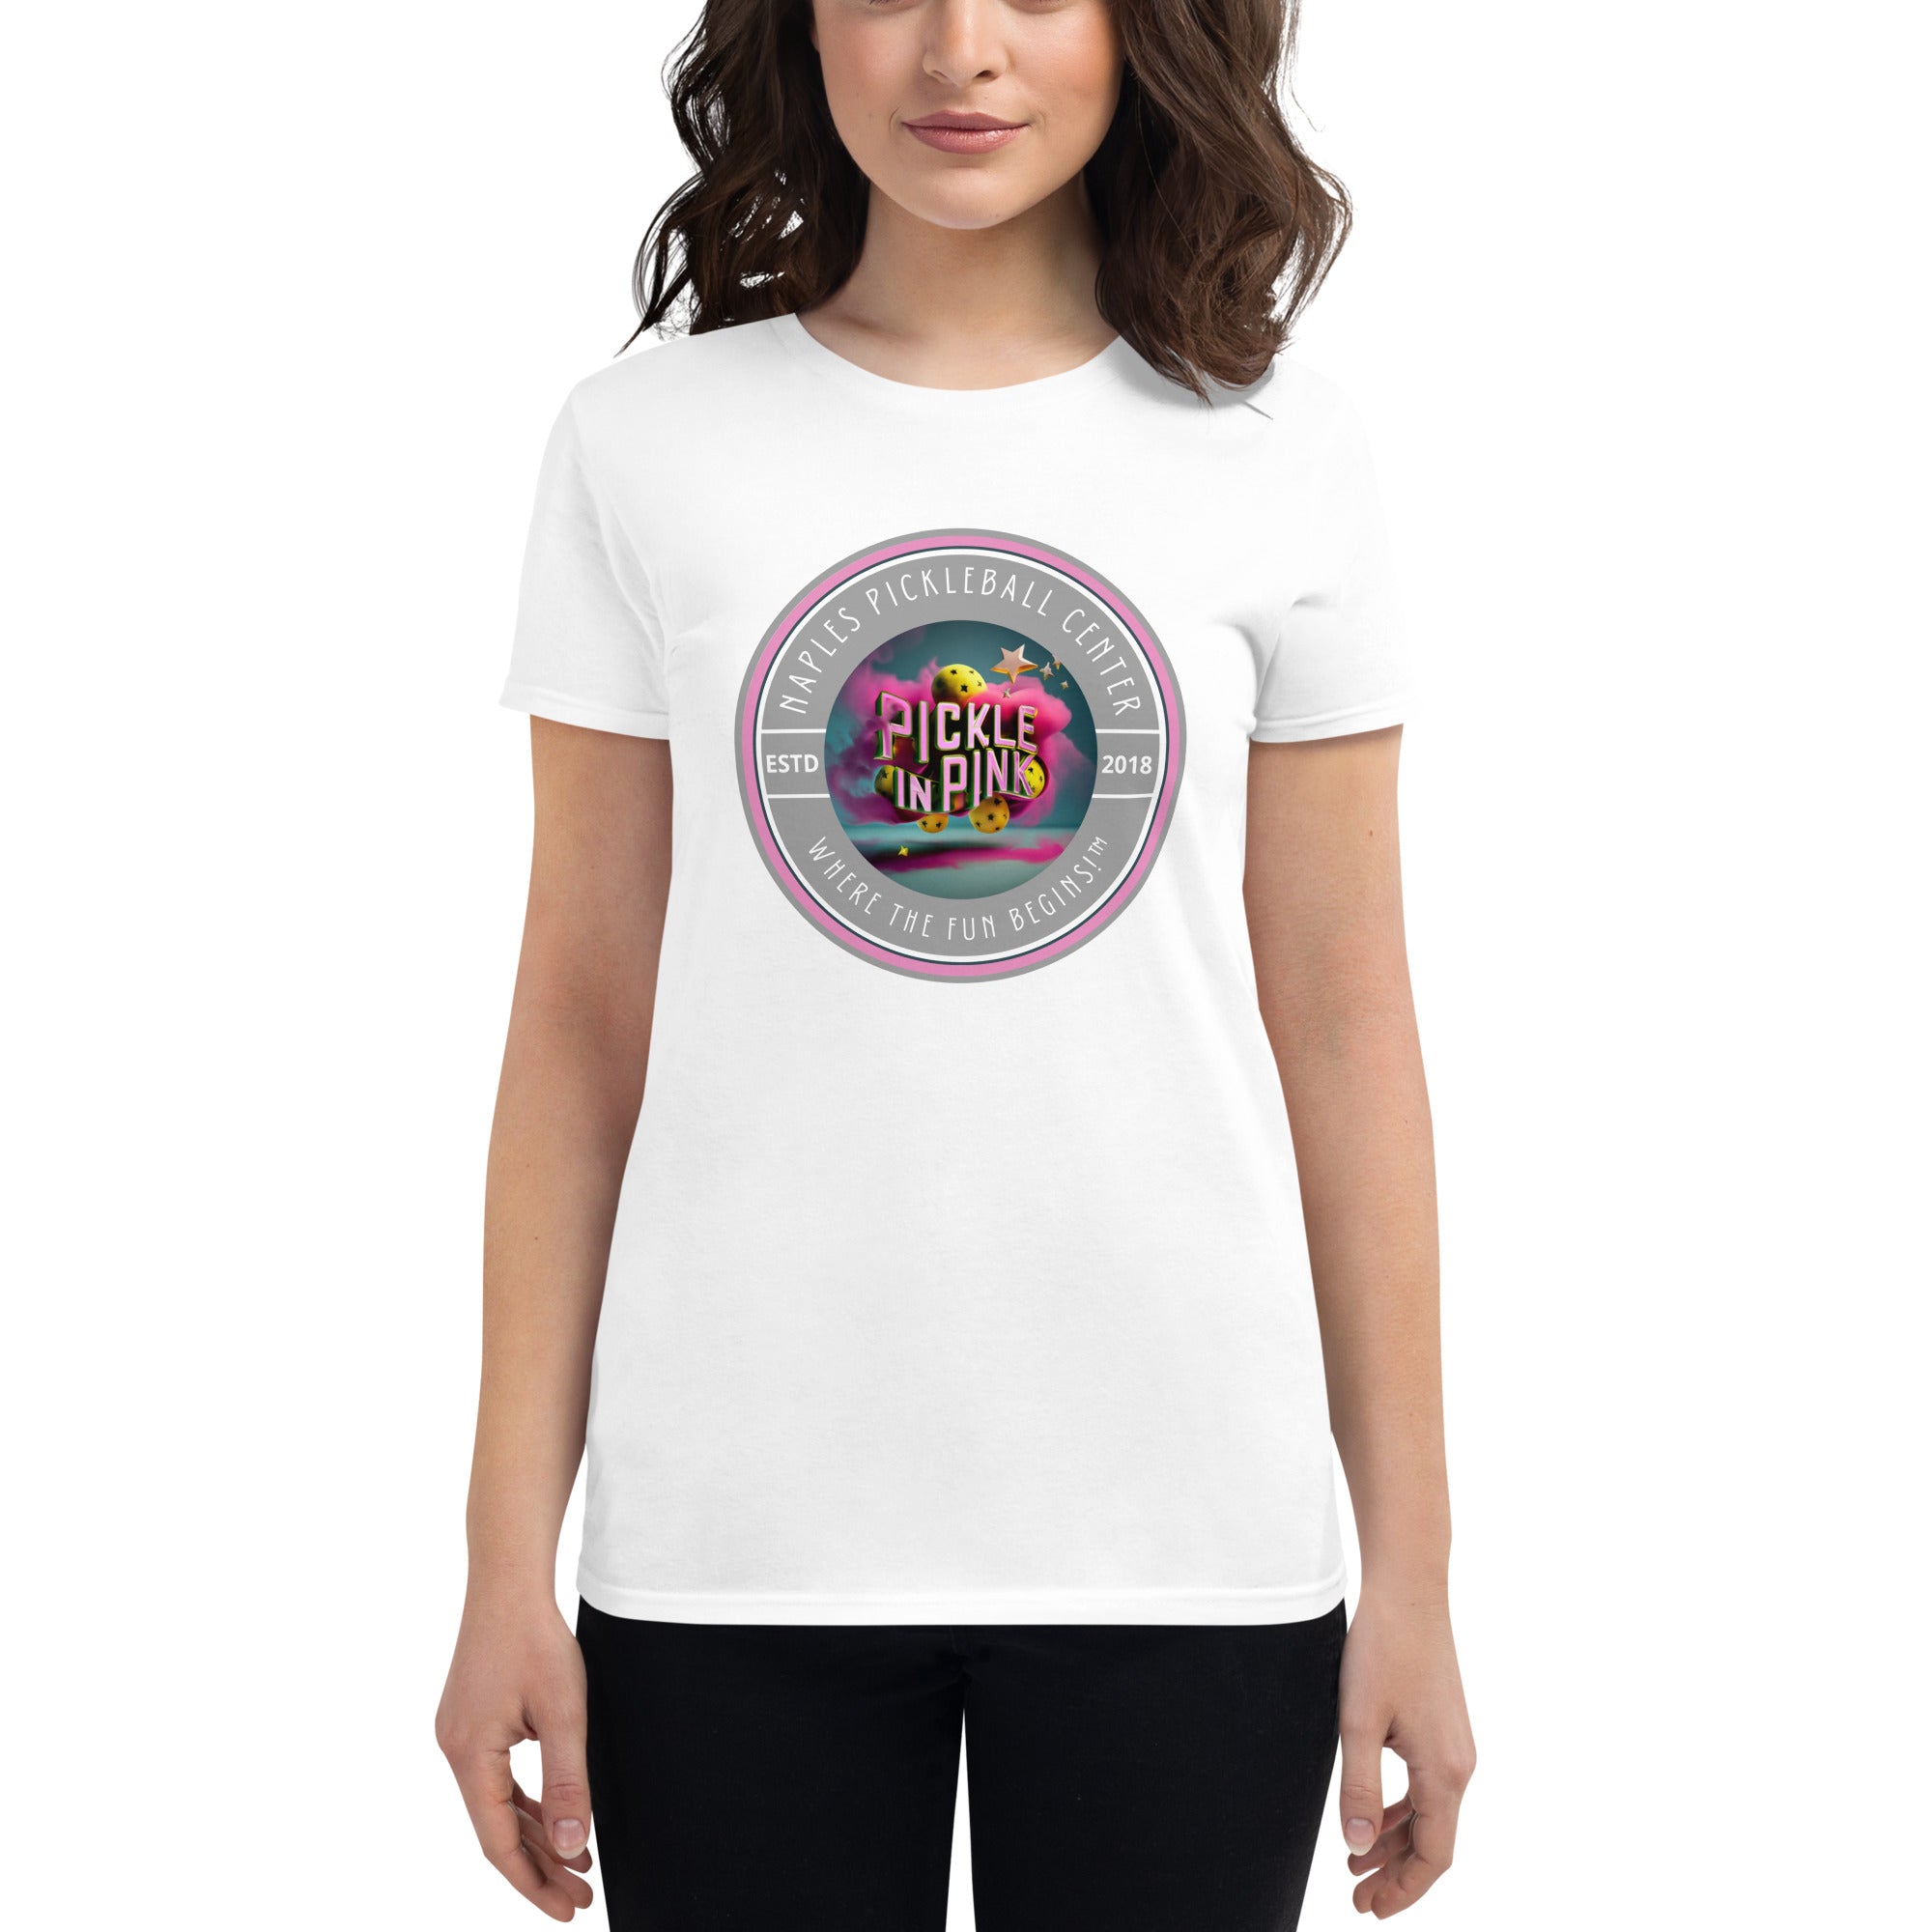 "Pickle in Pink" Naples Pickleball Center Women's short sleeve t-shirt!